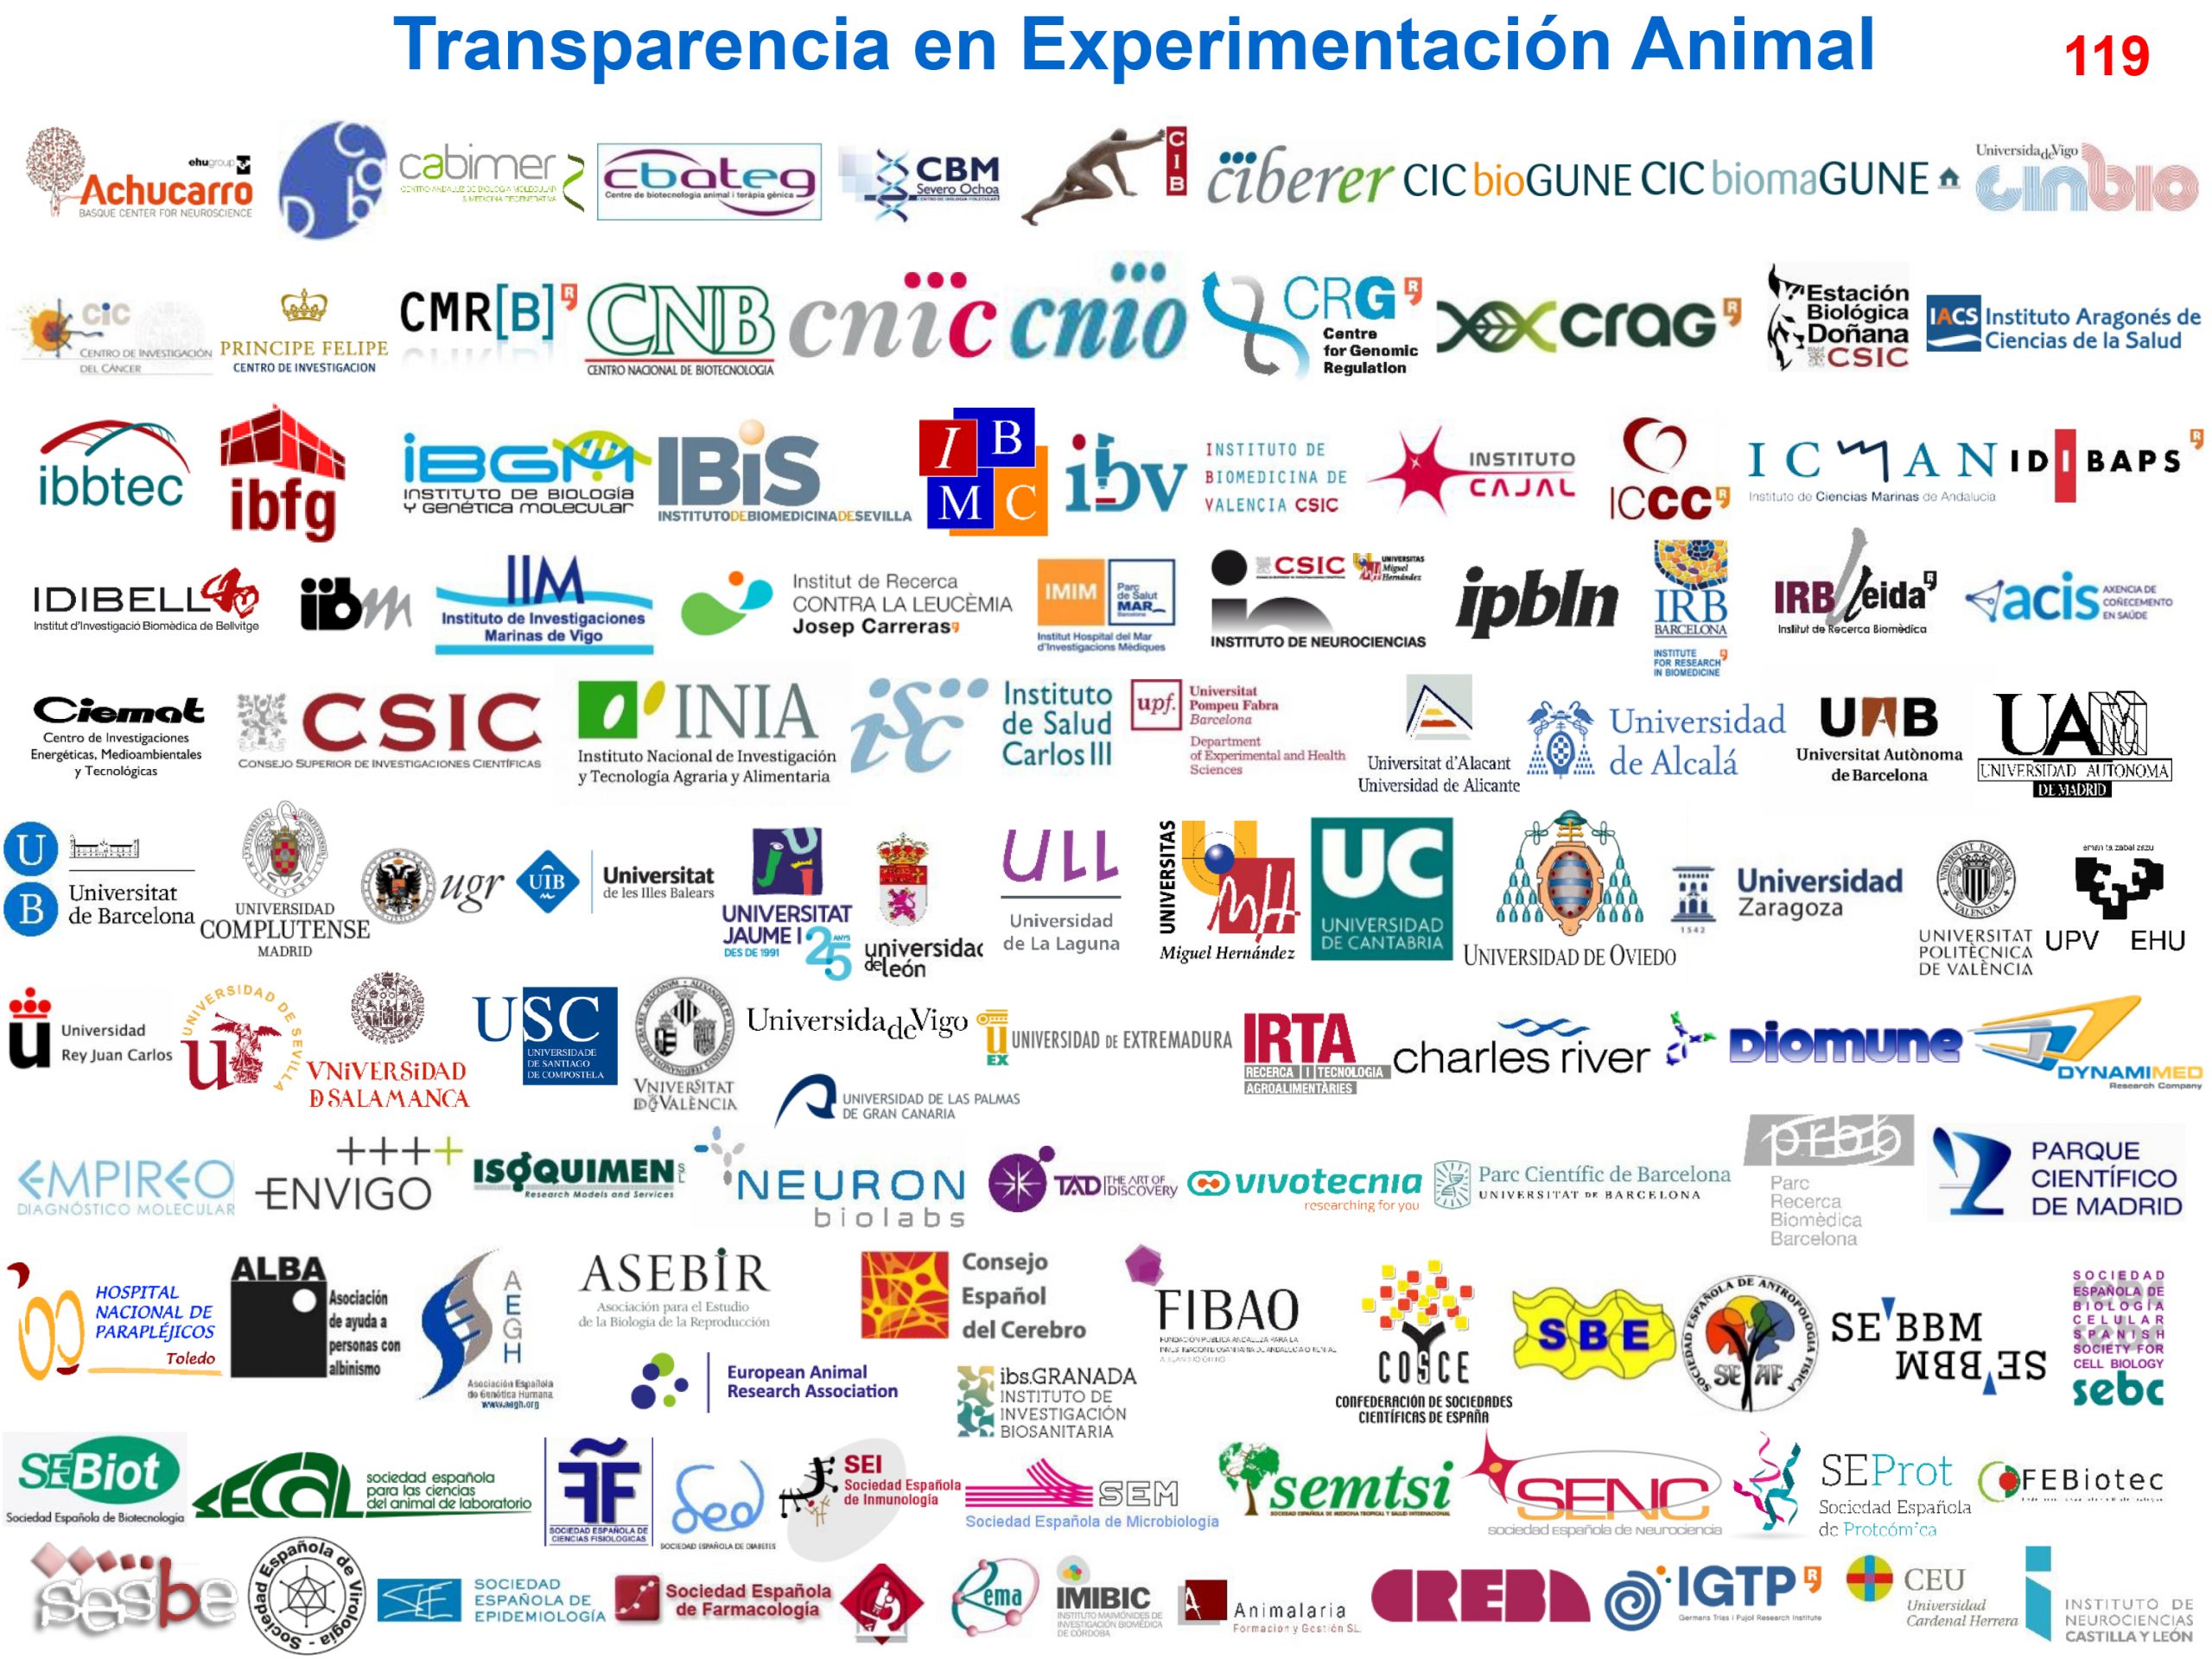 El ibs.GRANADA se unen al acuerdo COSCE por la transparencia en experimentación animal